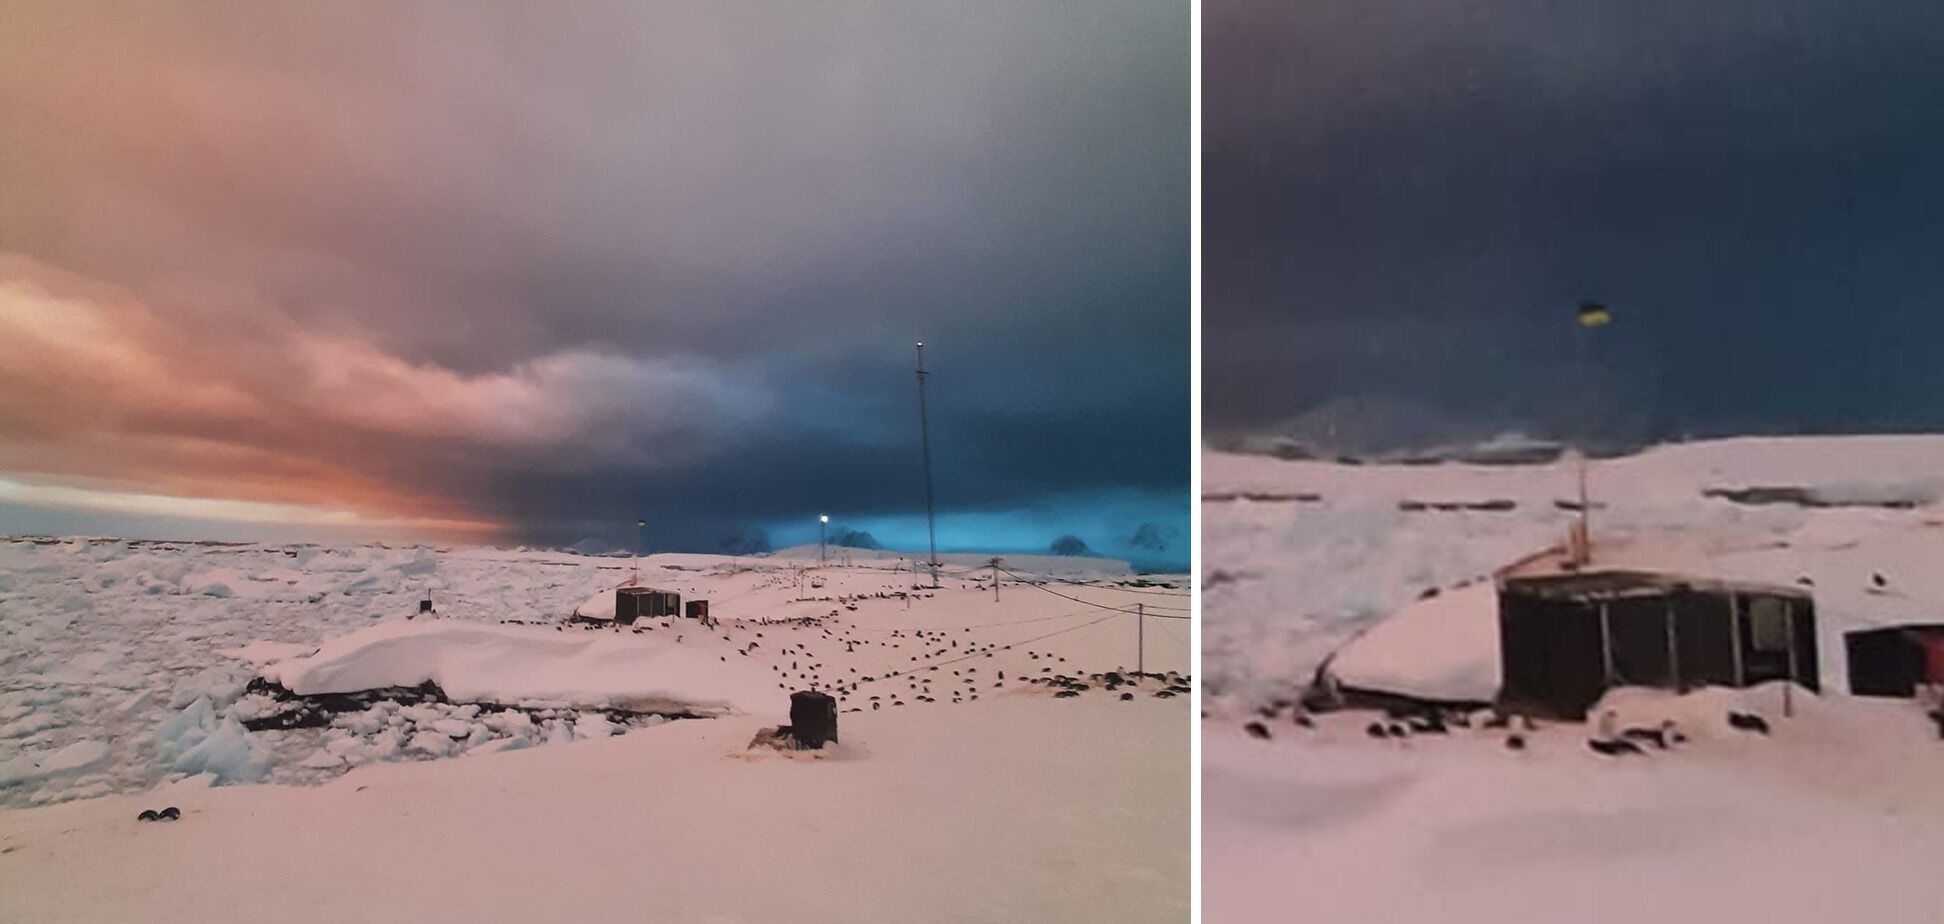 Черно-розовая: украинские полярники показали, какой бывает Антарктида в это время года. Фото